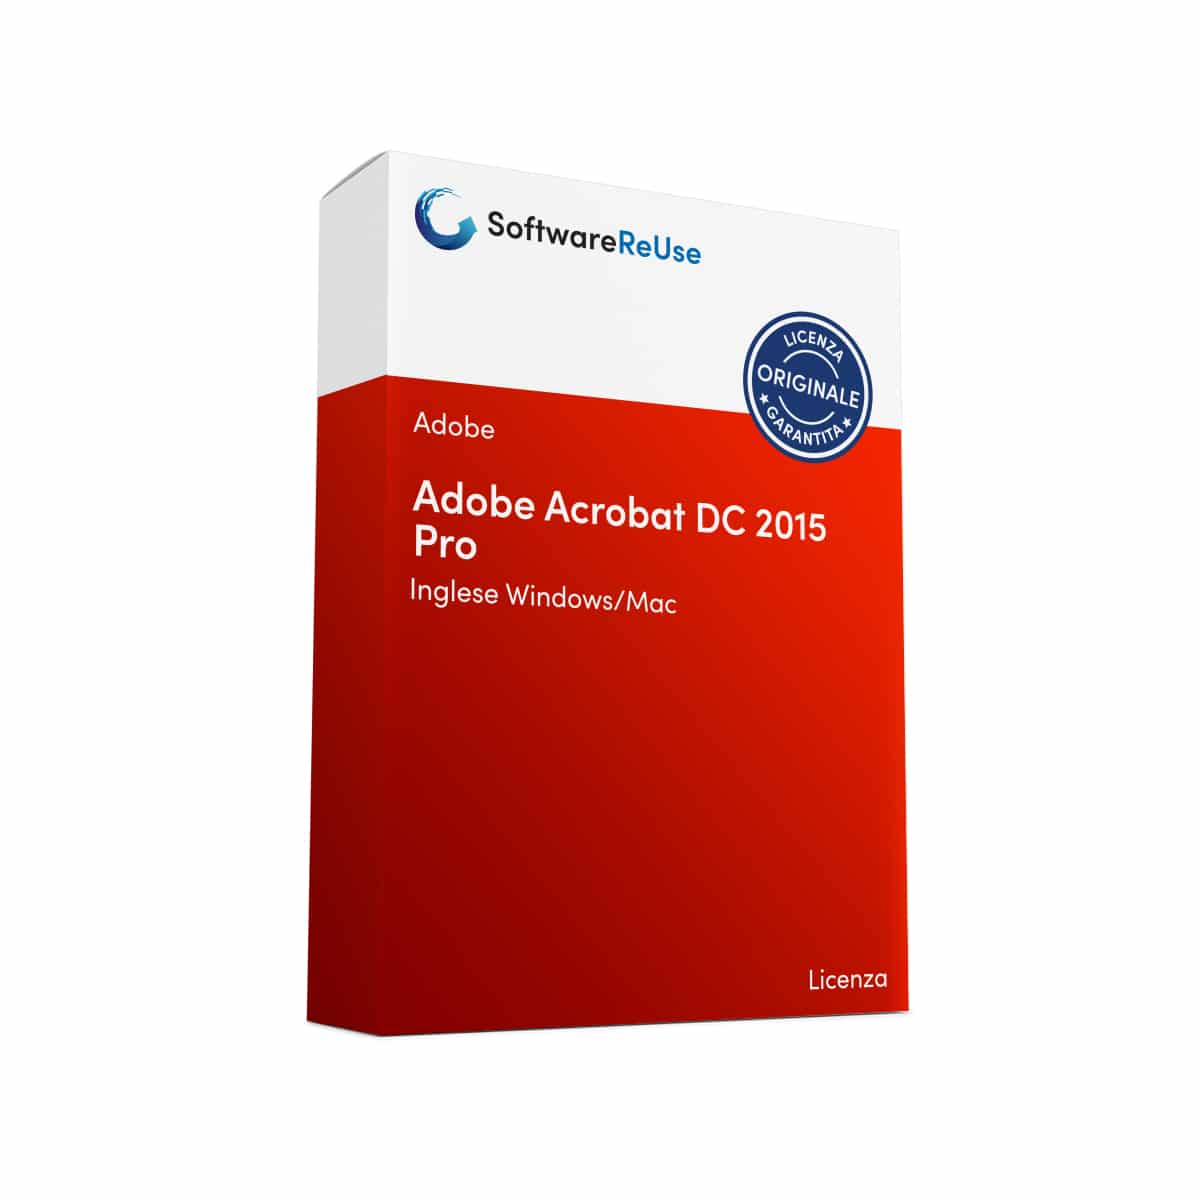 Adobe Acrobat DC 2015 Pro 7